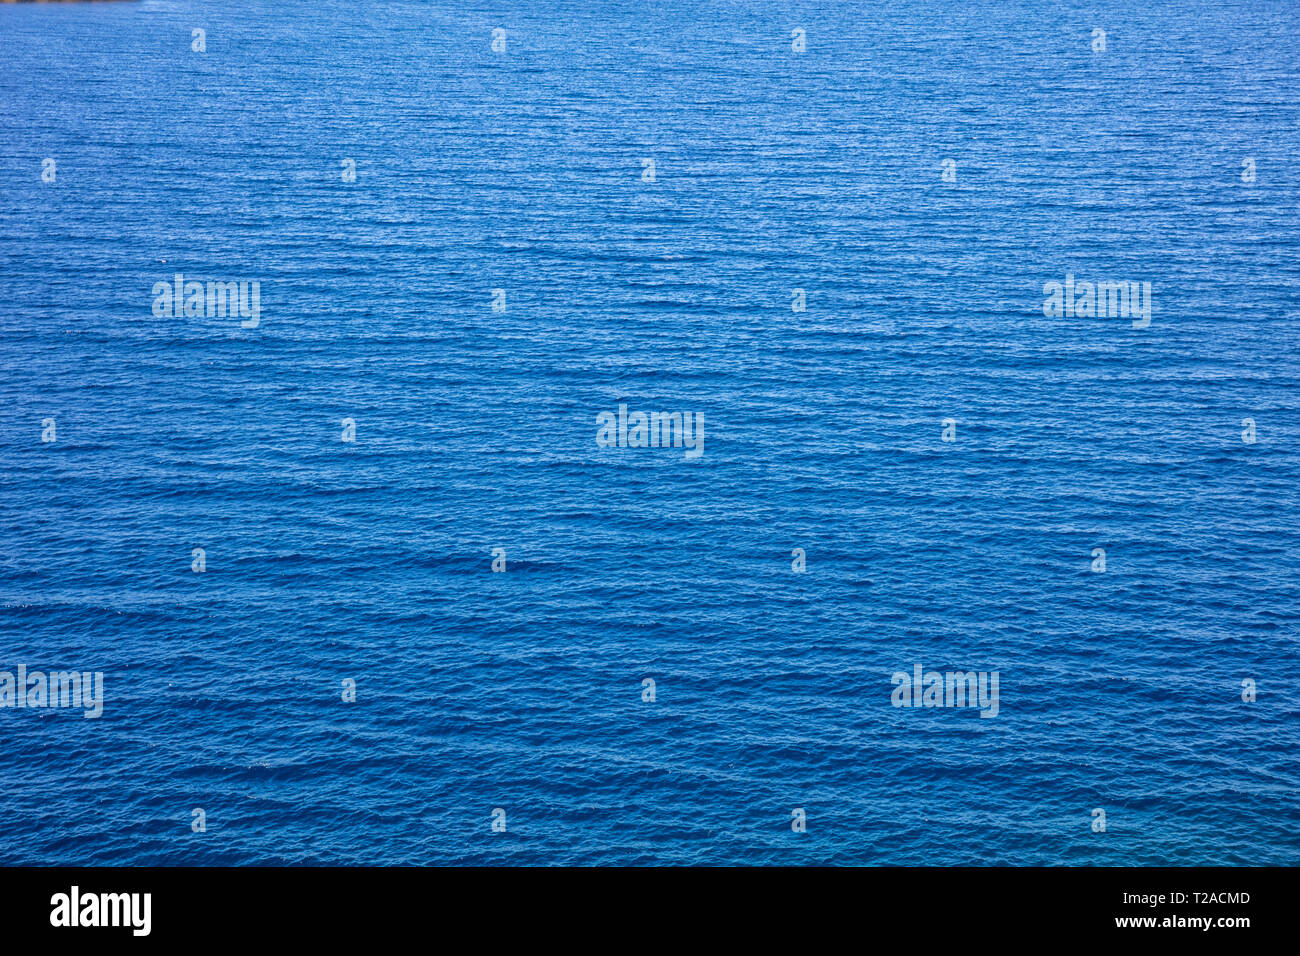 Blue sea surface de l'eau. Mer calme avec rides texture de fond, high angle view Banque D'Images